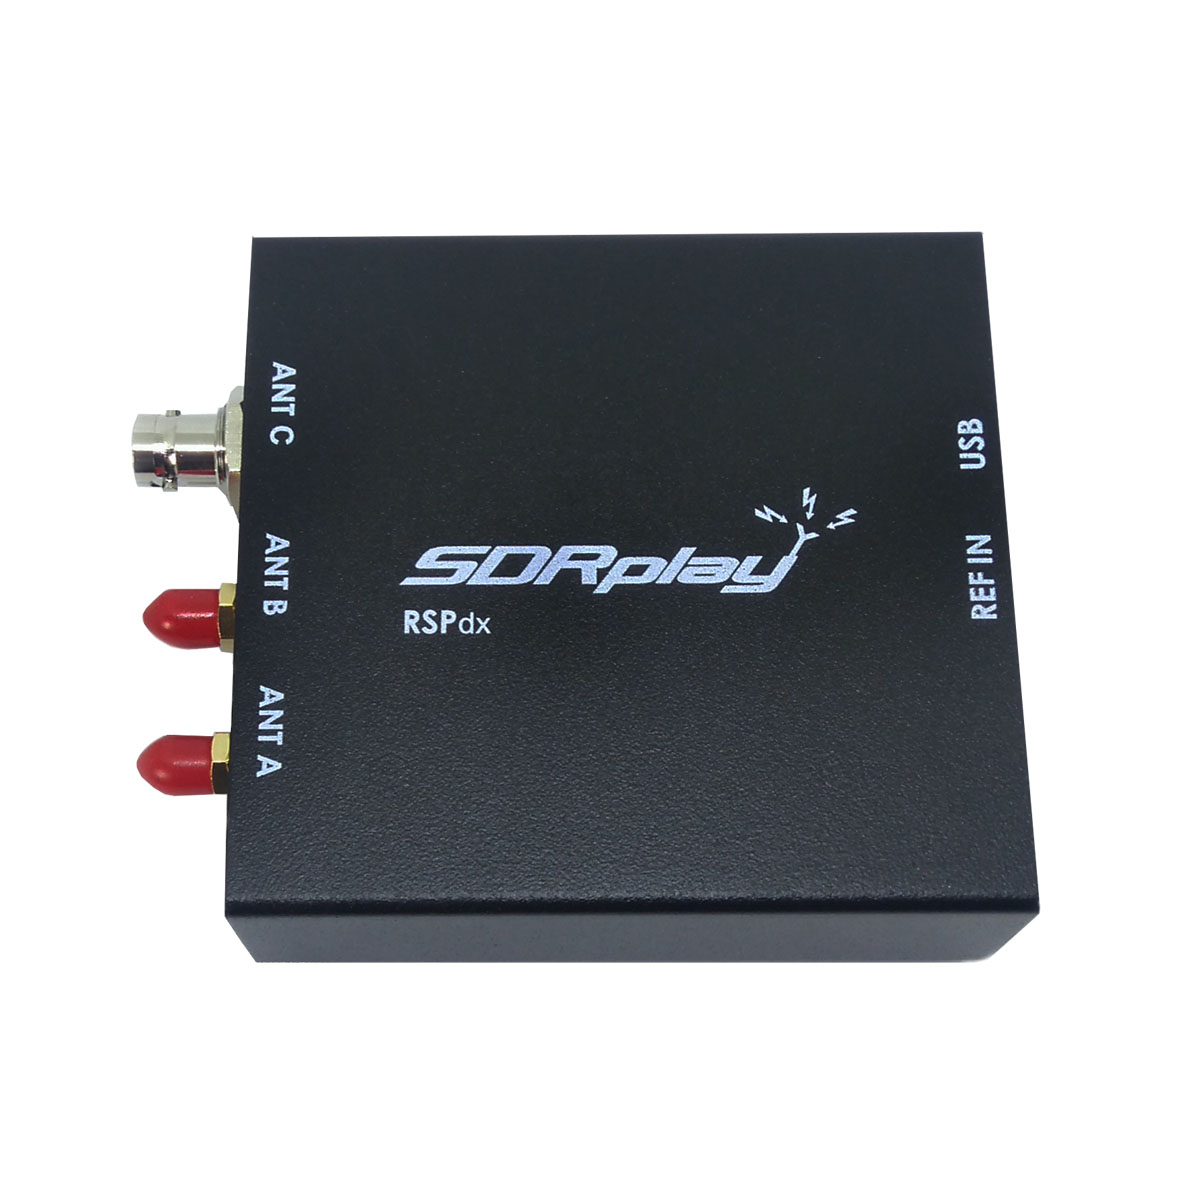 SDRplay RSPdx SDR-Empfänger 1 kHz bis 2 GHz